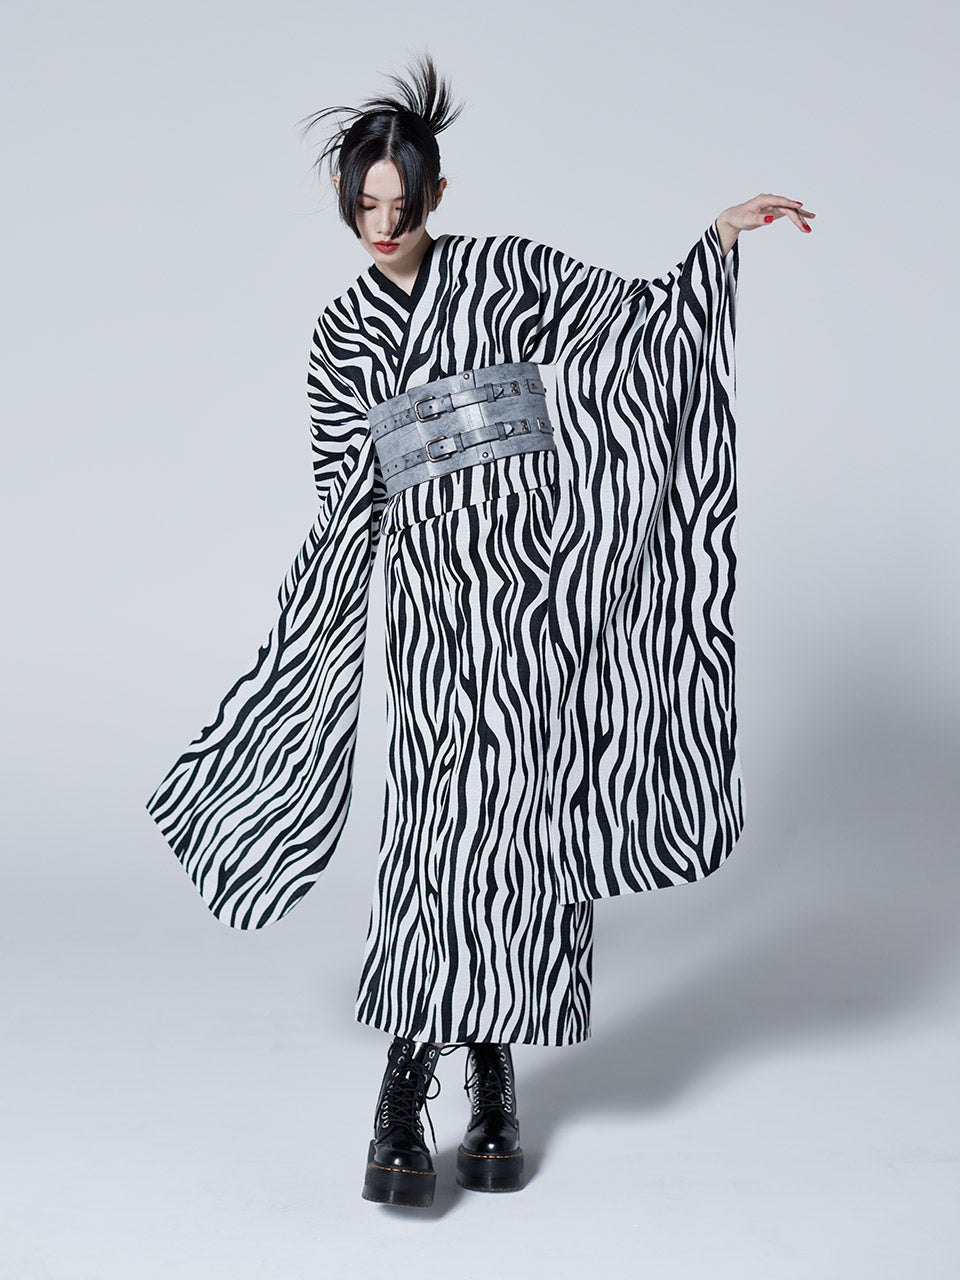 2025年 成人式振袖レンタル 「Zebra (帯ベルト)」